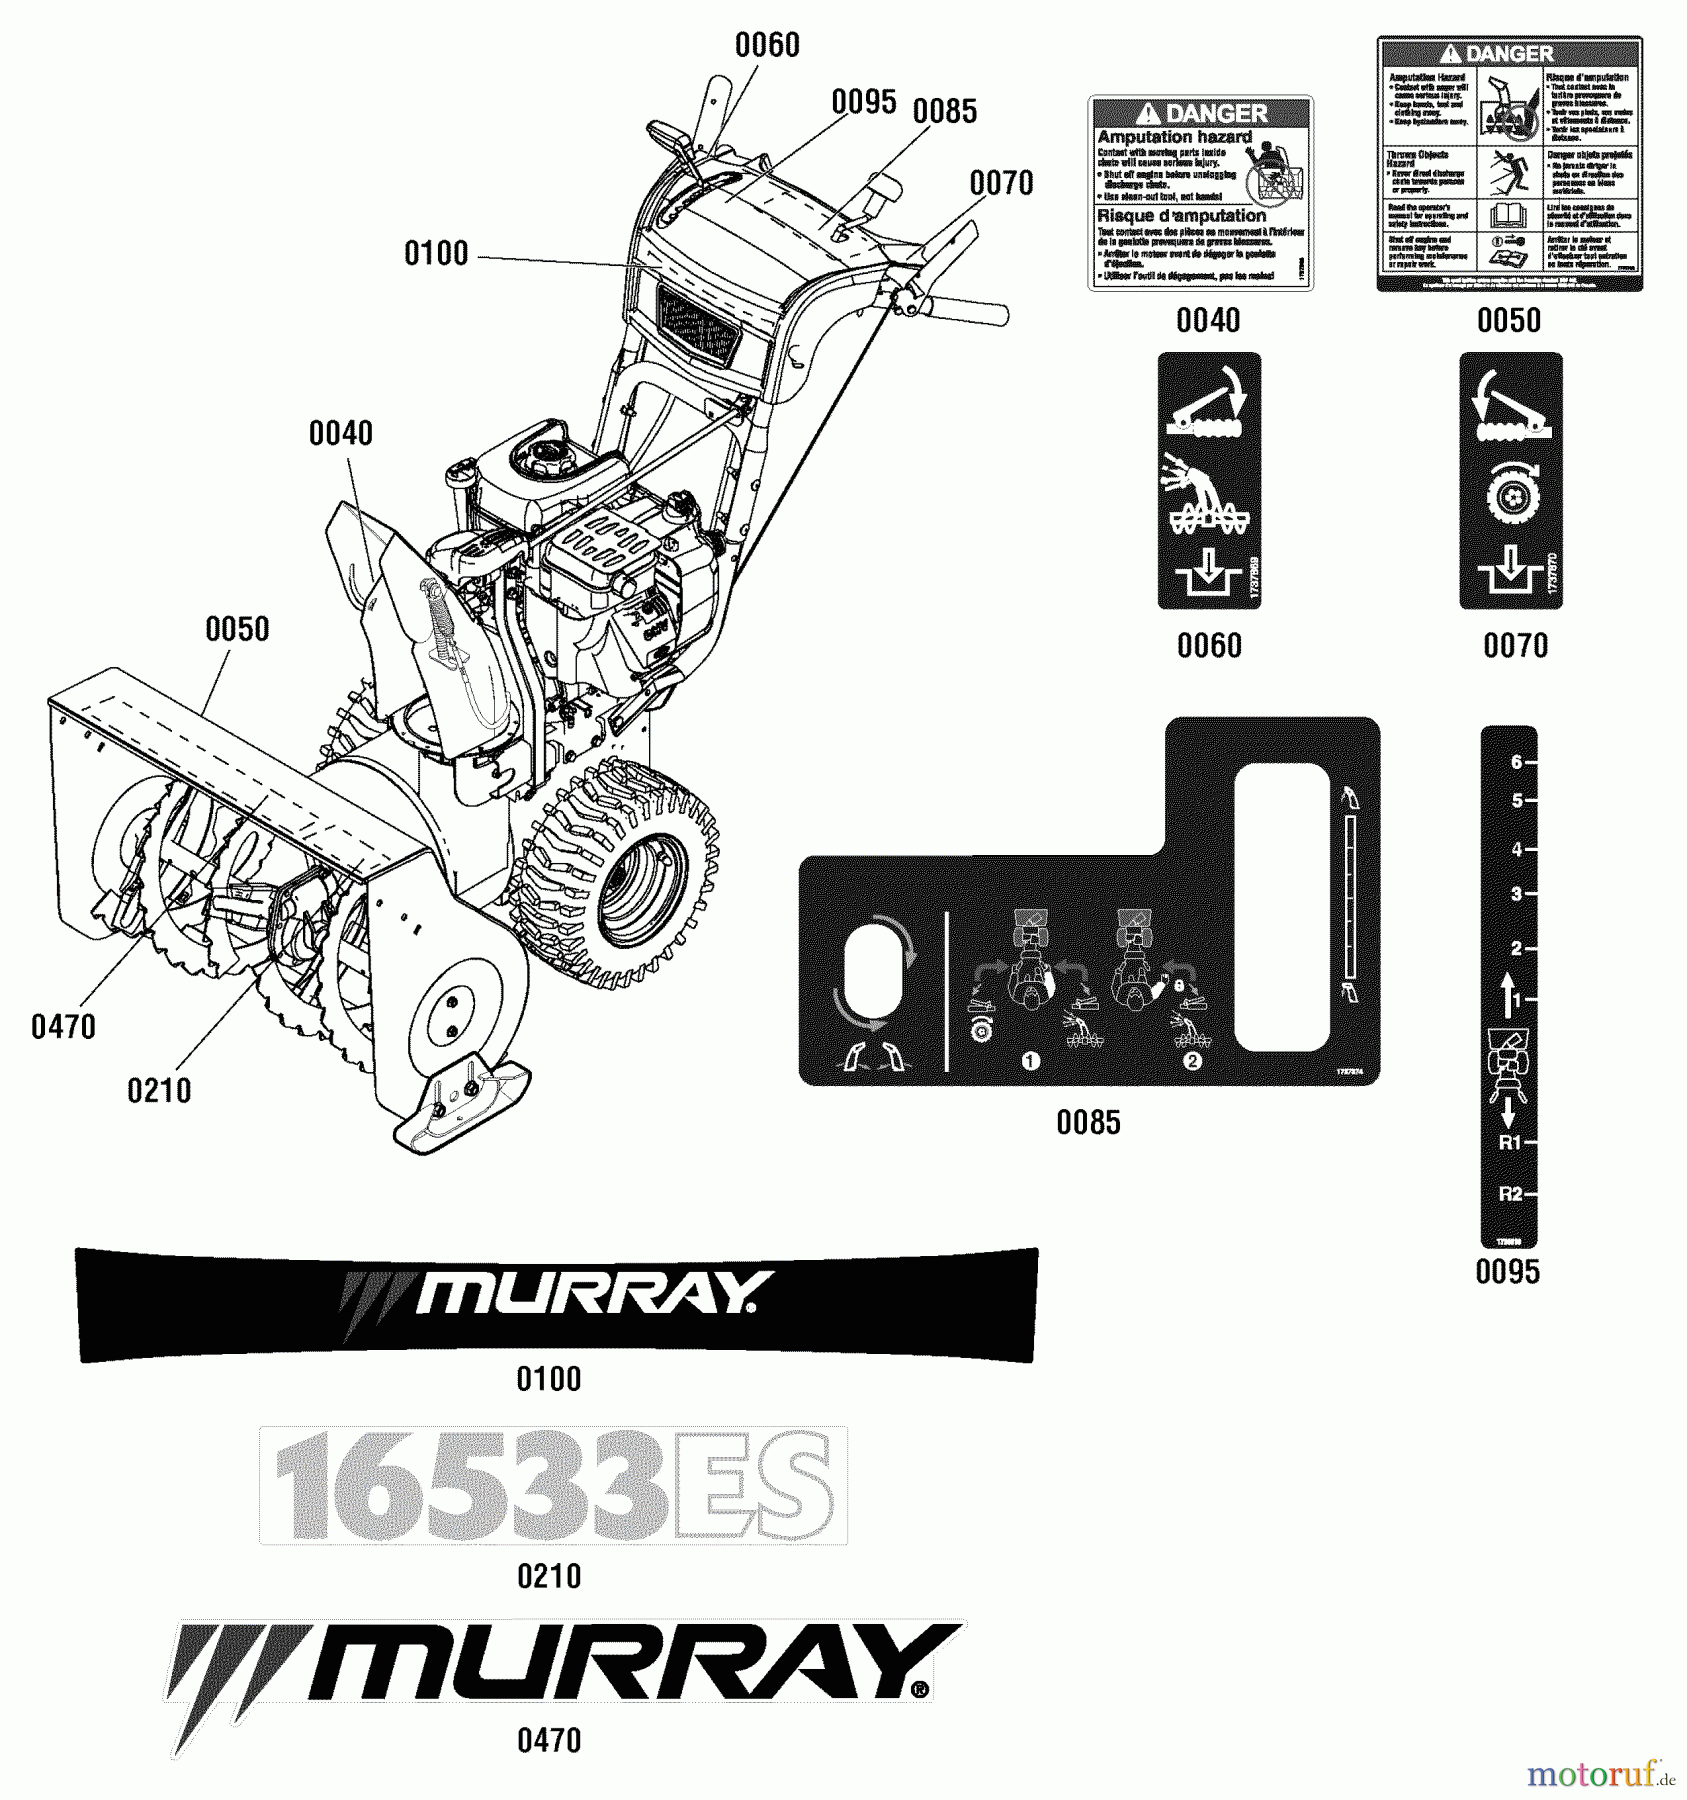  Murray Schneefräsen 16533ES (1696031) - Murray 33